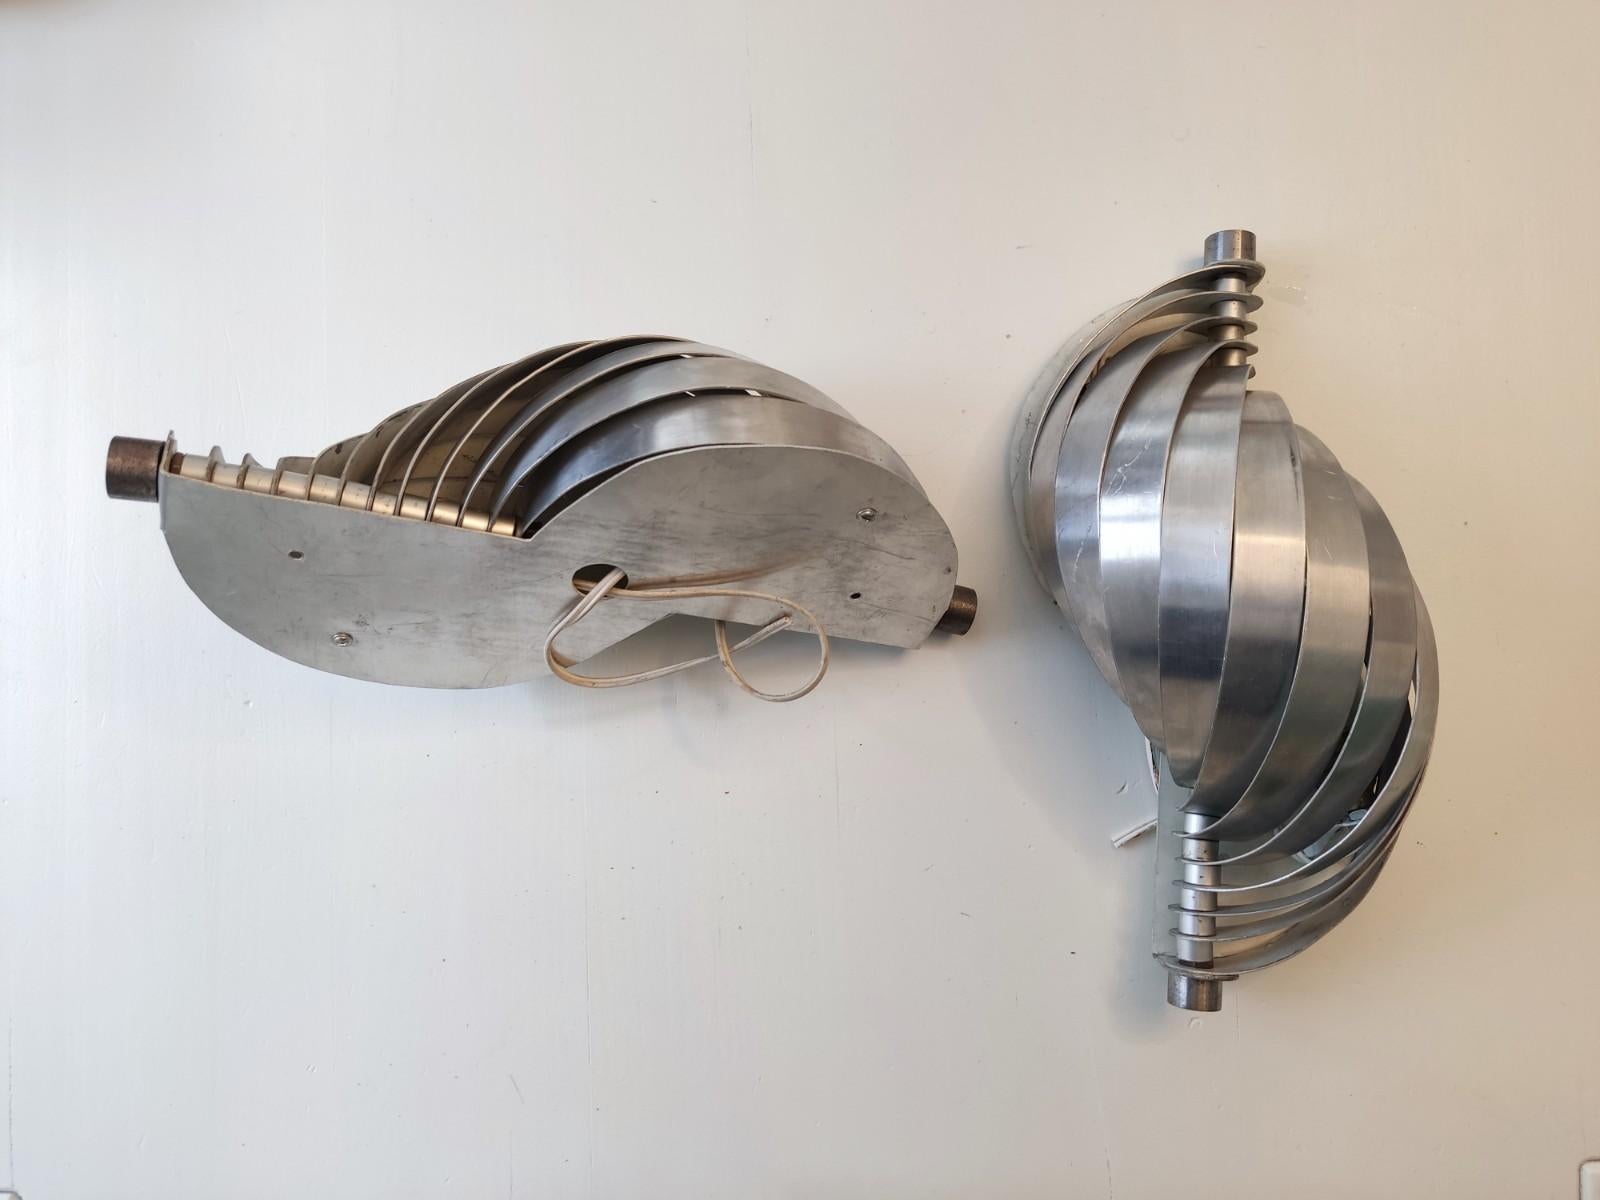 Paire d'appliques attribuées à Henri Mathieu, designer des années 70 connu pour ses lampes faites de lames d'aluminium tendues sur un axe. Une lumière douce et cinétique qui donnera beaucoup d'élégance à votre intérieur. Traces d'utilisation